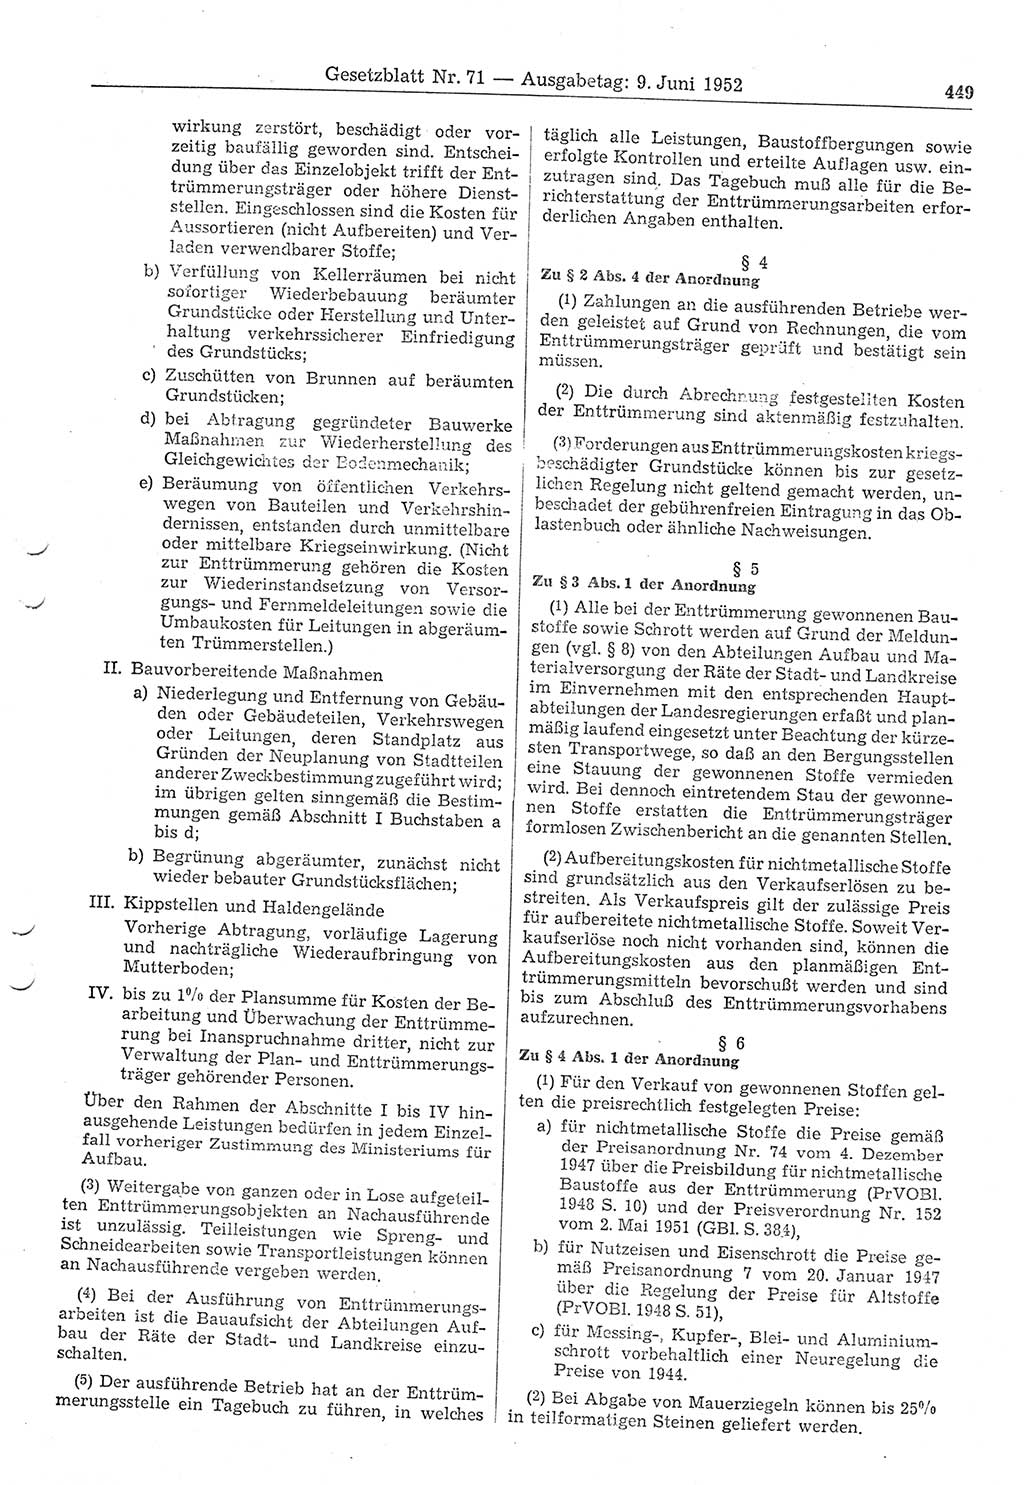 Gesetzblatt (GBl.) der Deutschen Demokratischen Republik (DDR) 1952, Seite 449 (GBl. DDR 1952, S. 449)